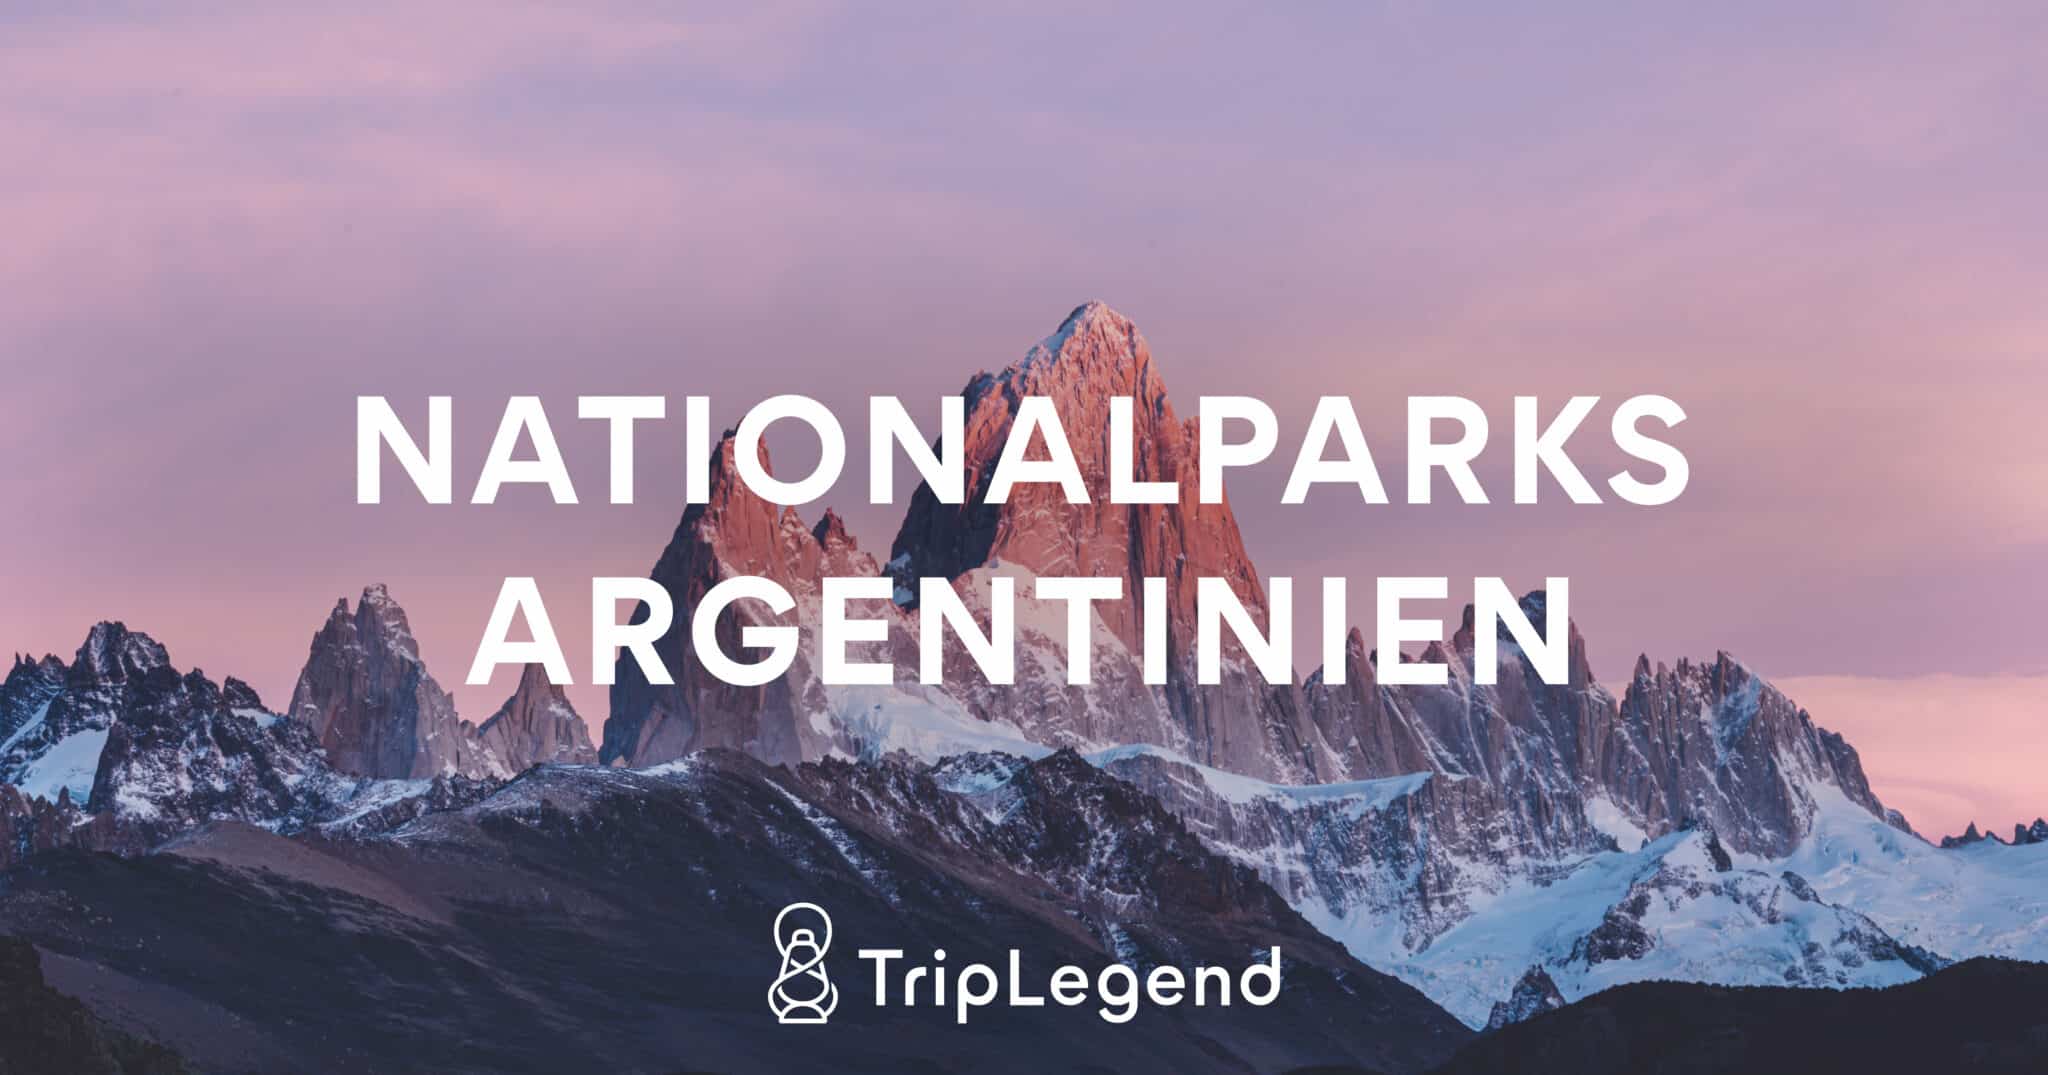 Imagen colaboradora para el artículo Parques Nacionales en Argentina